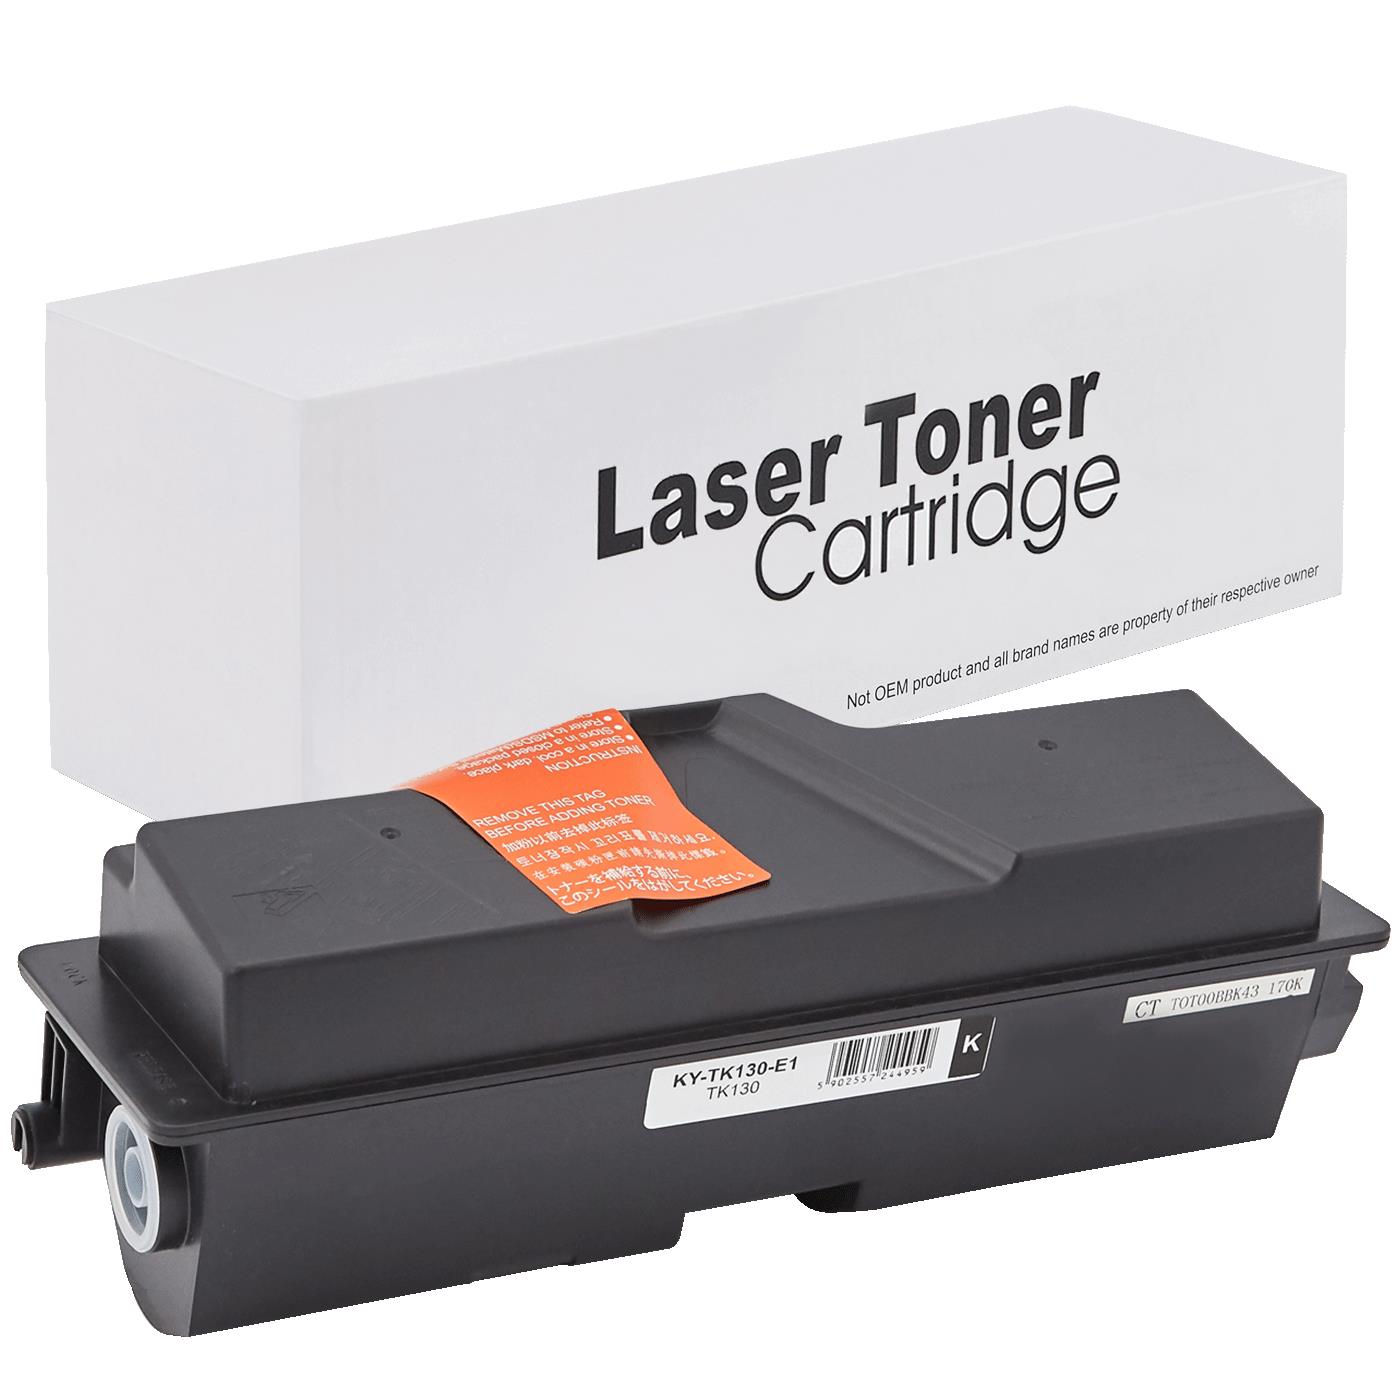 съвместима тонер касета за принтери и печатащи устройства на Kyocera Mita FS 1300DN Toner KY-TK130 | TK130. Ниски цени, прецизно изпълнение, високо качество.